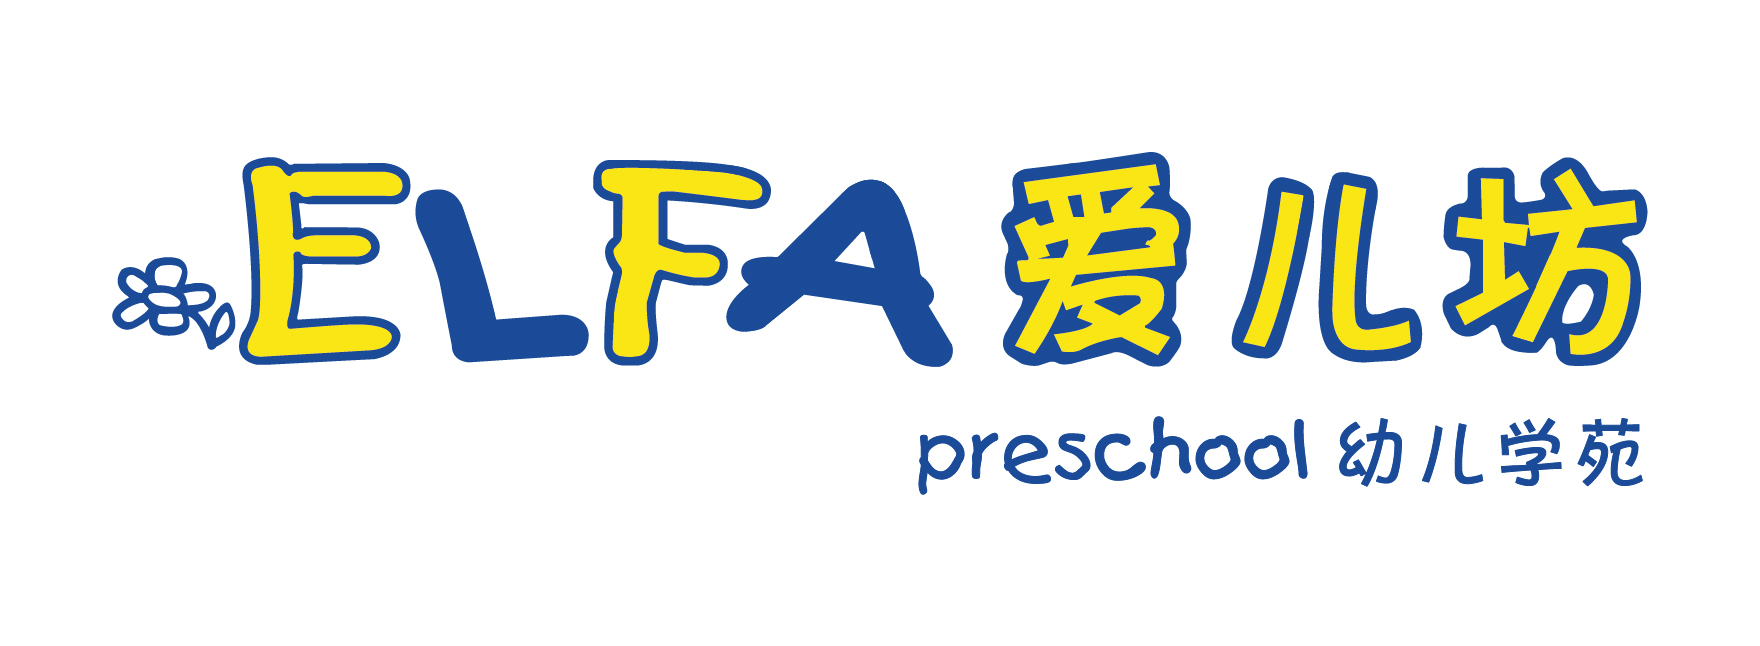 ELFA Preschool Singapore Logo